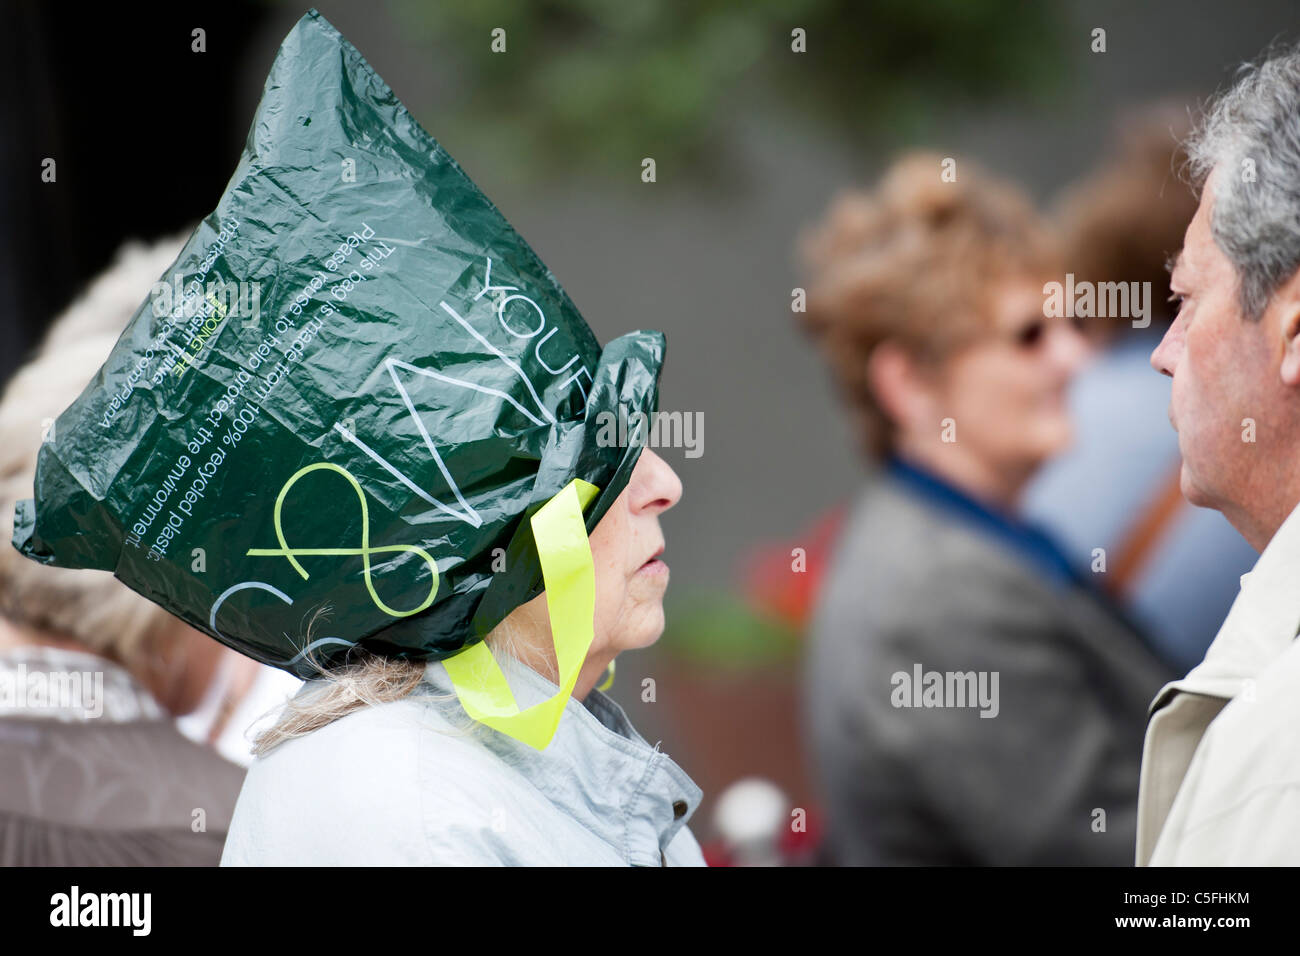 Ein Aktionär hält warm mit einer Plastiktüte als Hut beim Schlangestehen vor dem Festspielhaus für Marks & Spencer AGM. Stockfoto